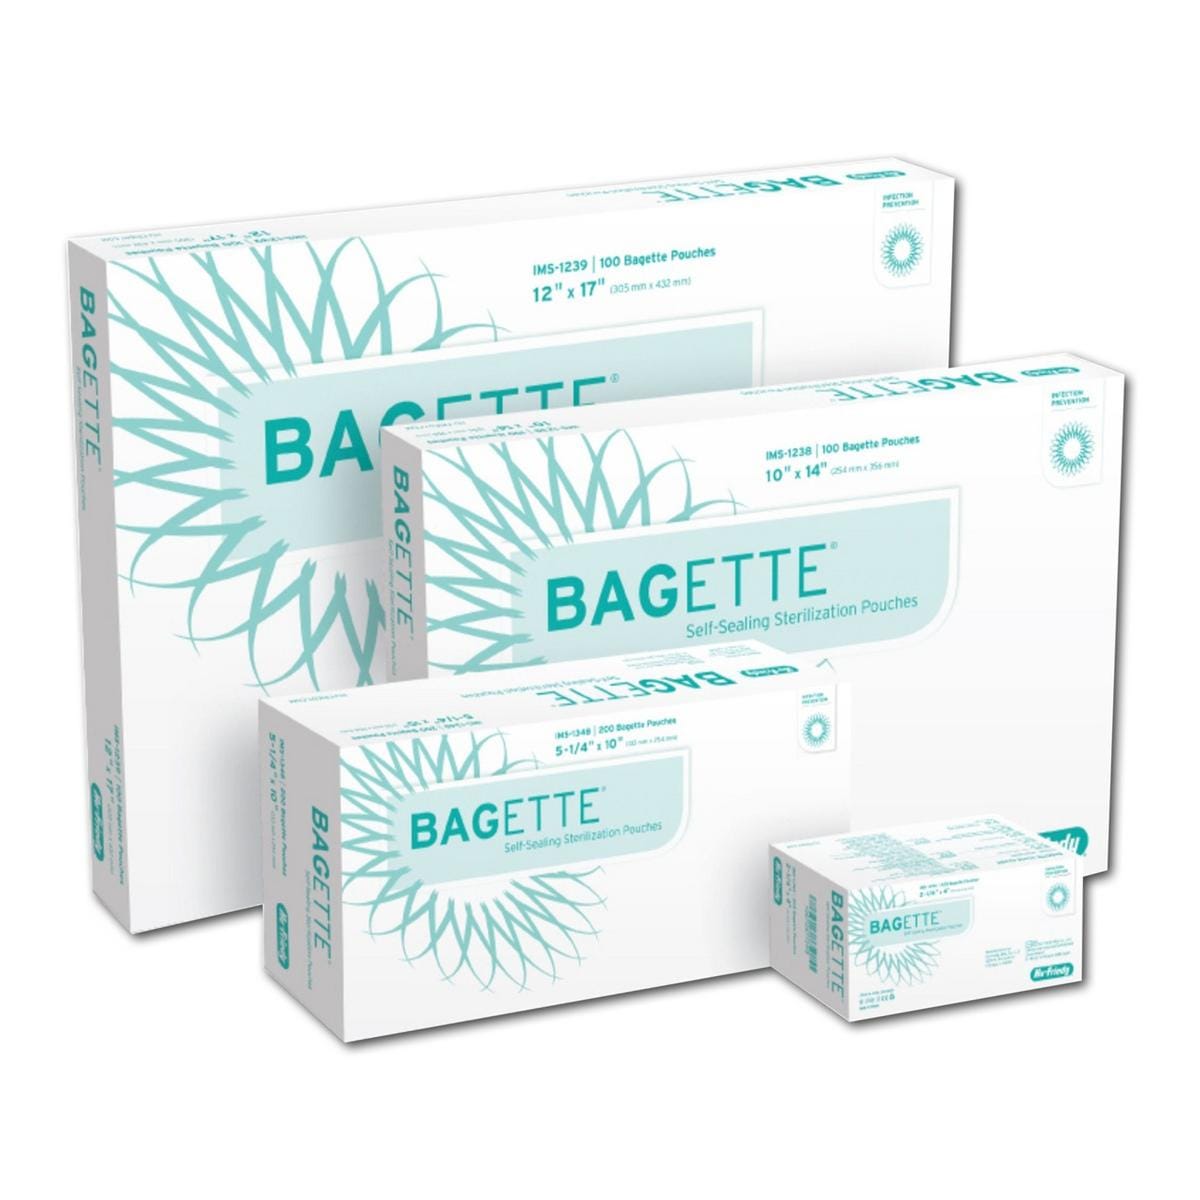 Bagette selfseal sacs de strilisation - Taille 89 x 229 mm, 200 pcs